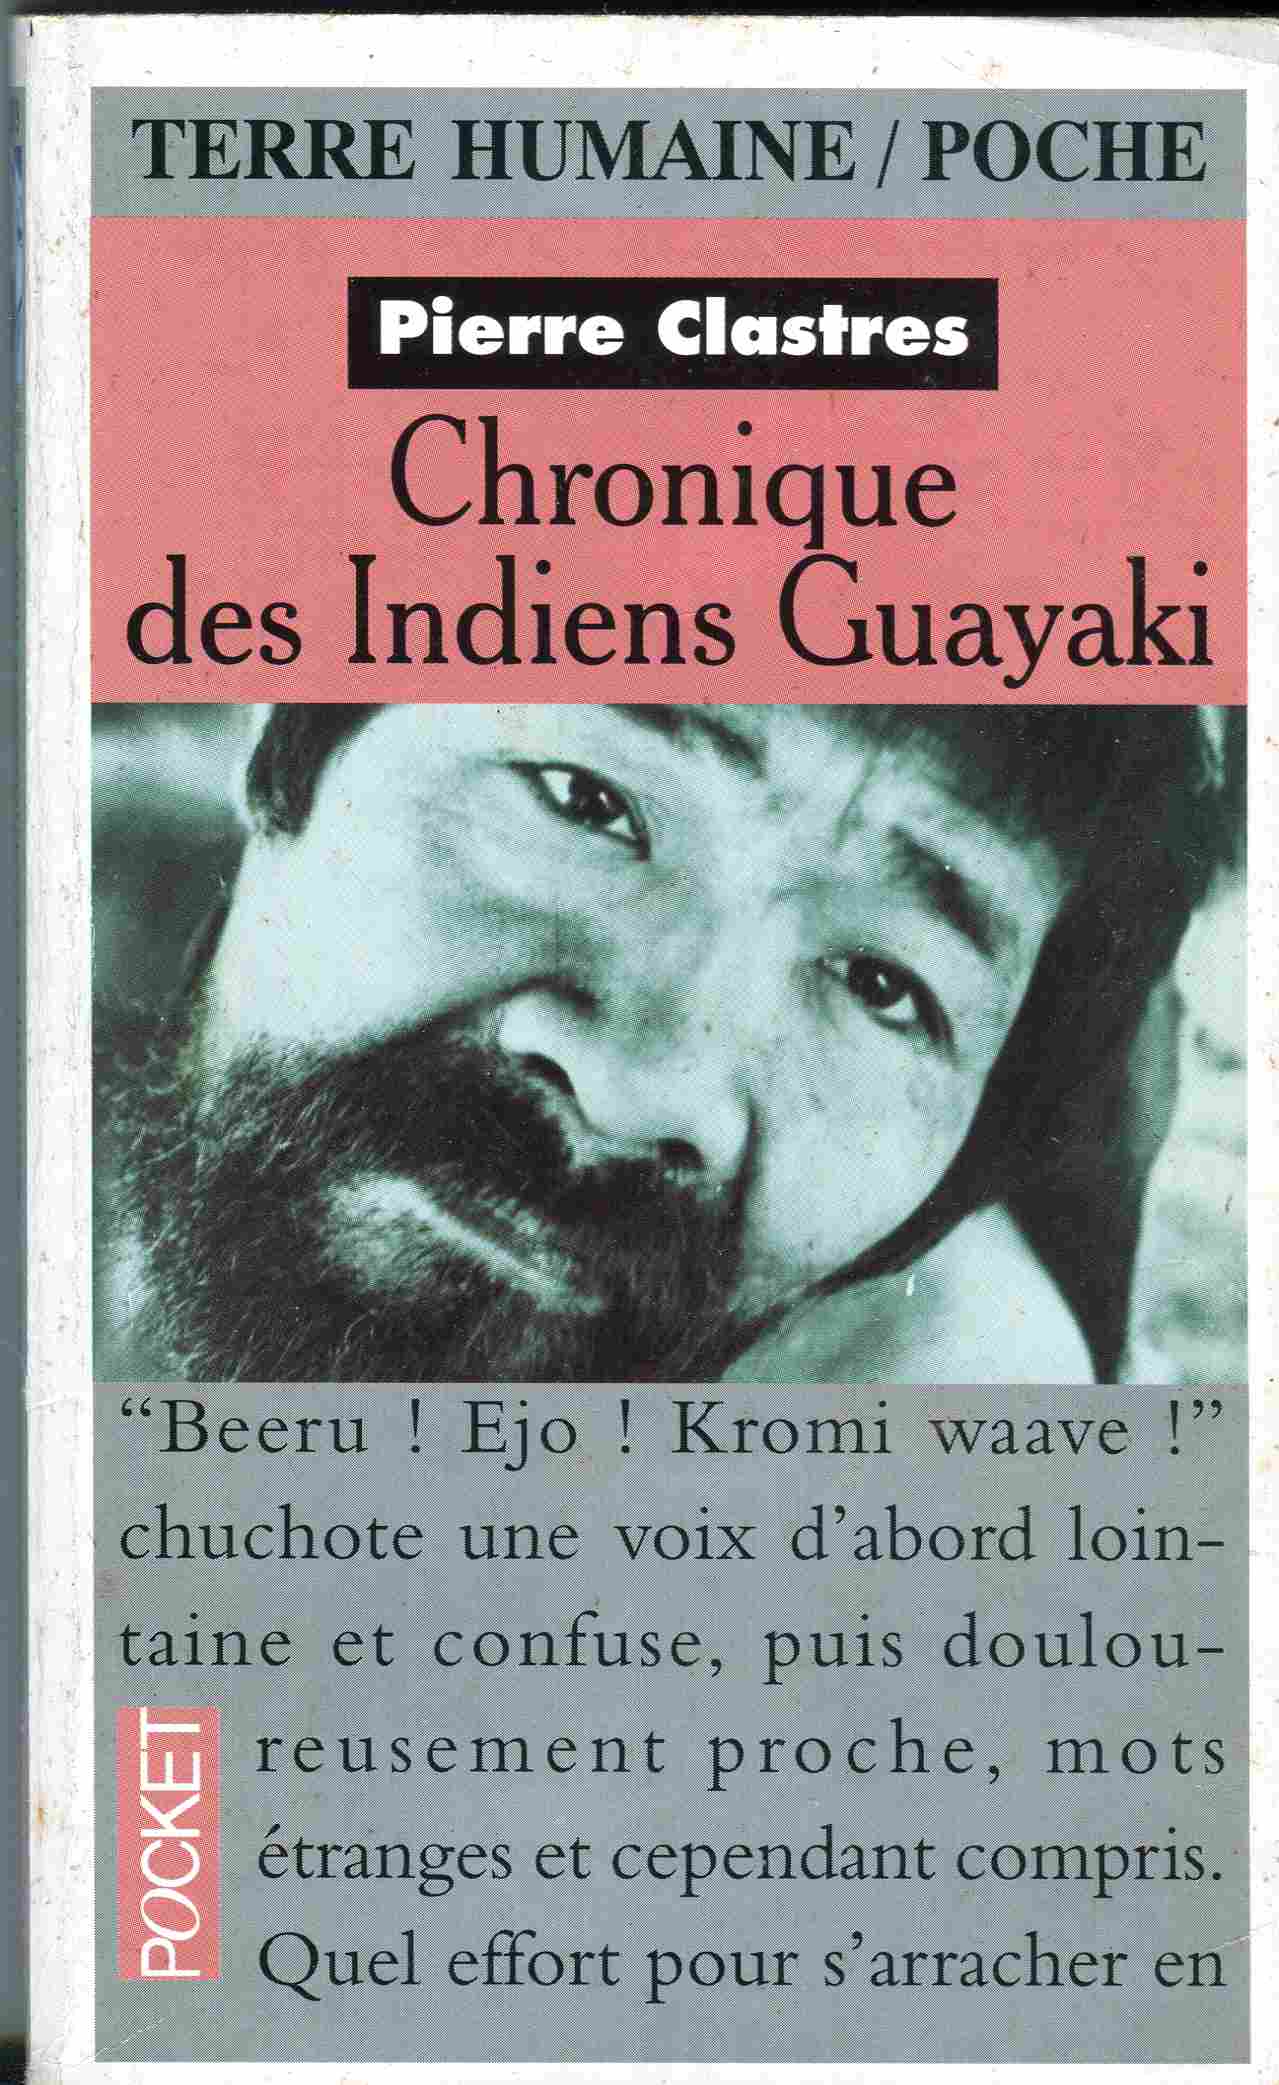 Chronique des Indiens Guayaki - Pierre Clastres 1s1h